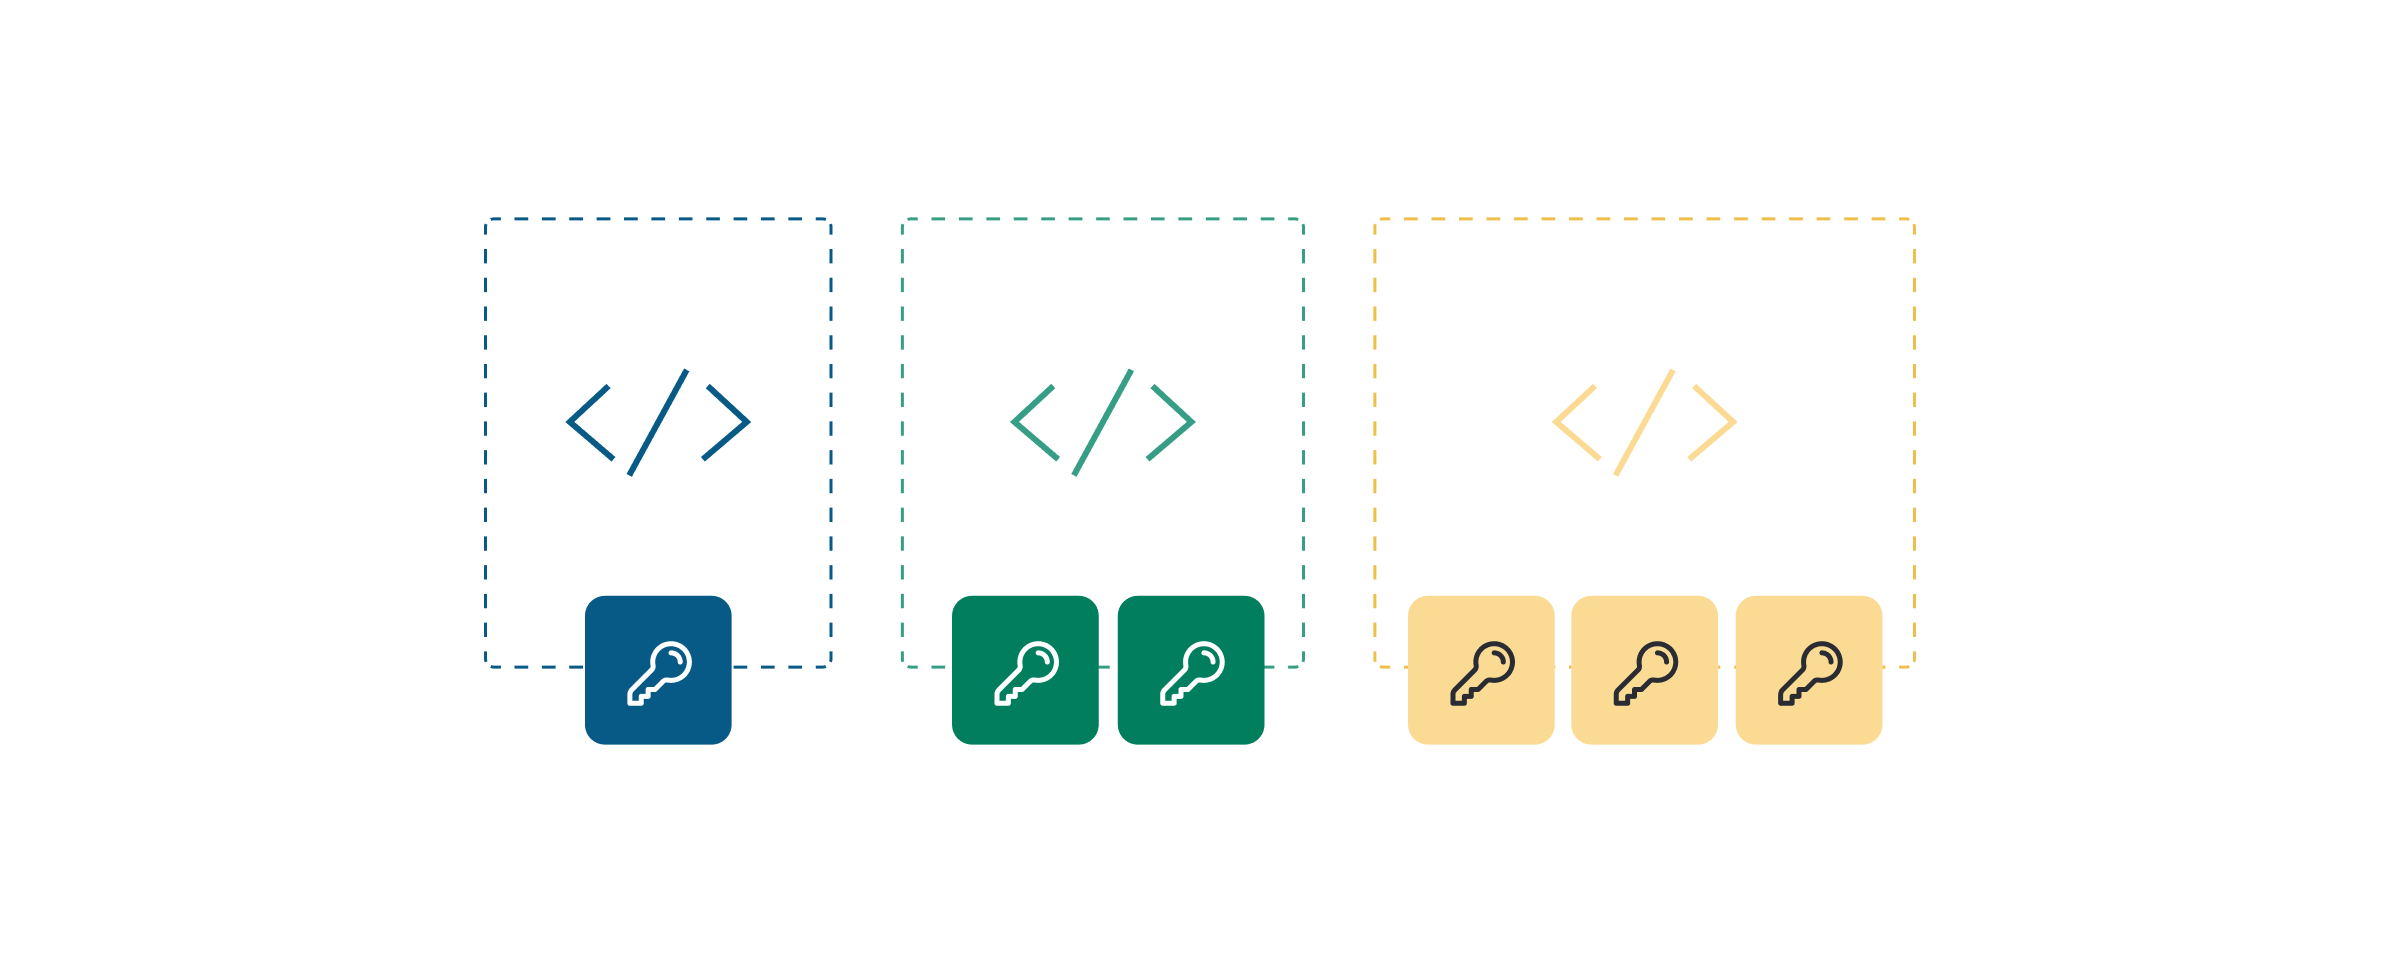 Illustration montrant des clés d’API sécurisées et des modèles d’utilisation en différentes couleurs